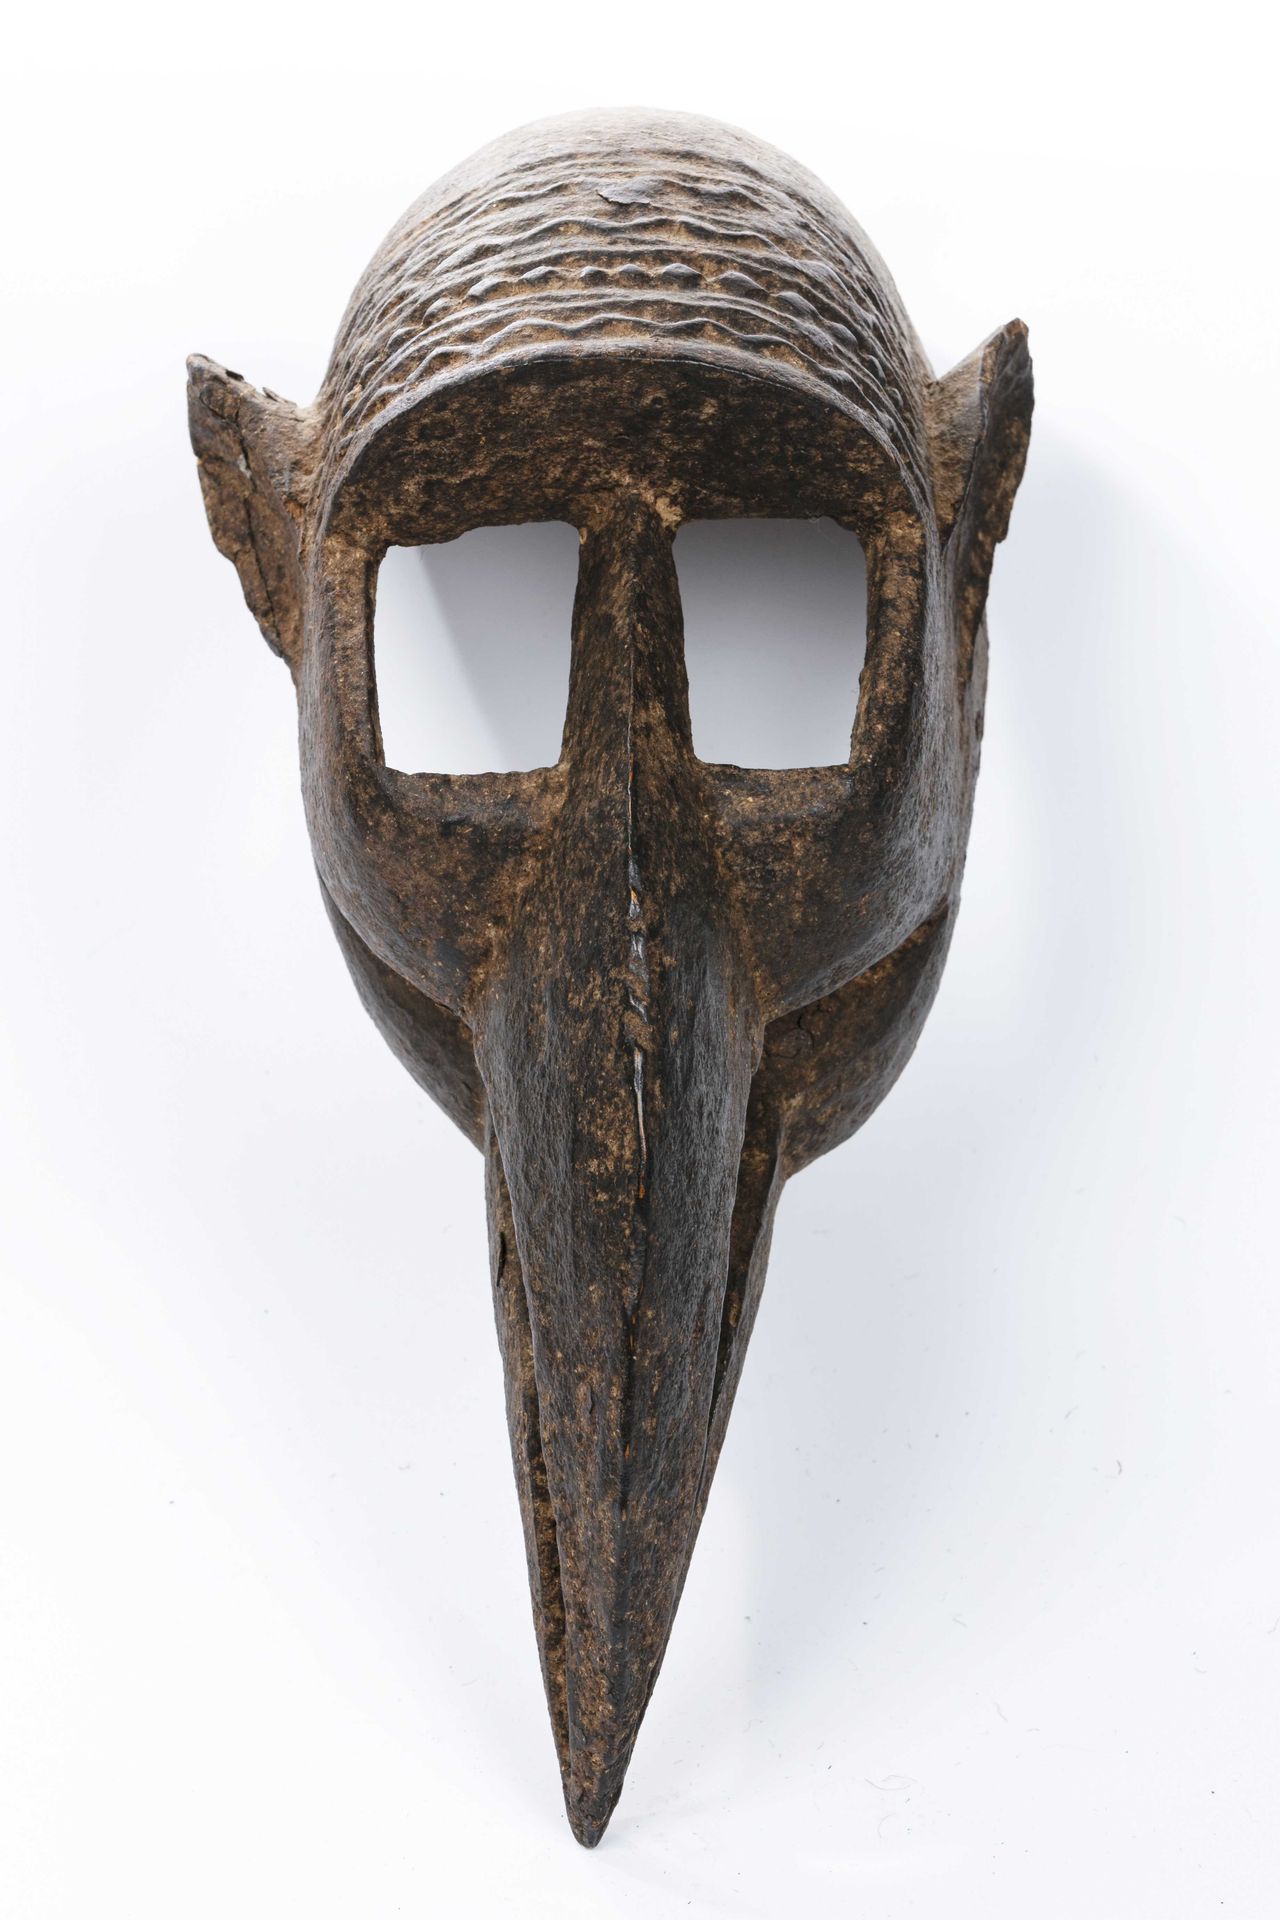 Null 多贡面具 
马里 
木头
高度：46厘米
变形面具，具有图式化的形式，呈现出强大的棱角分明的鸟嘴，垂下的，由长方形空腔形成的大空心眼，侧面的小尖耳朵。&hellip;